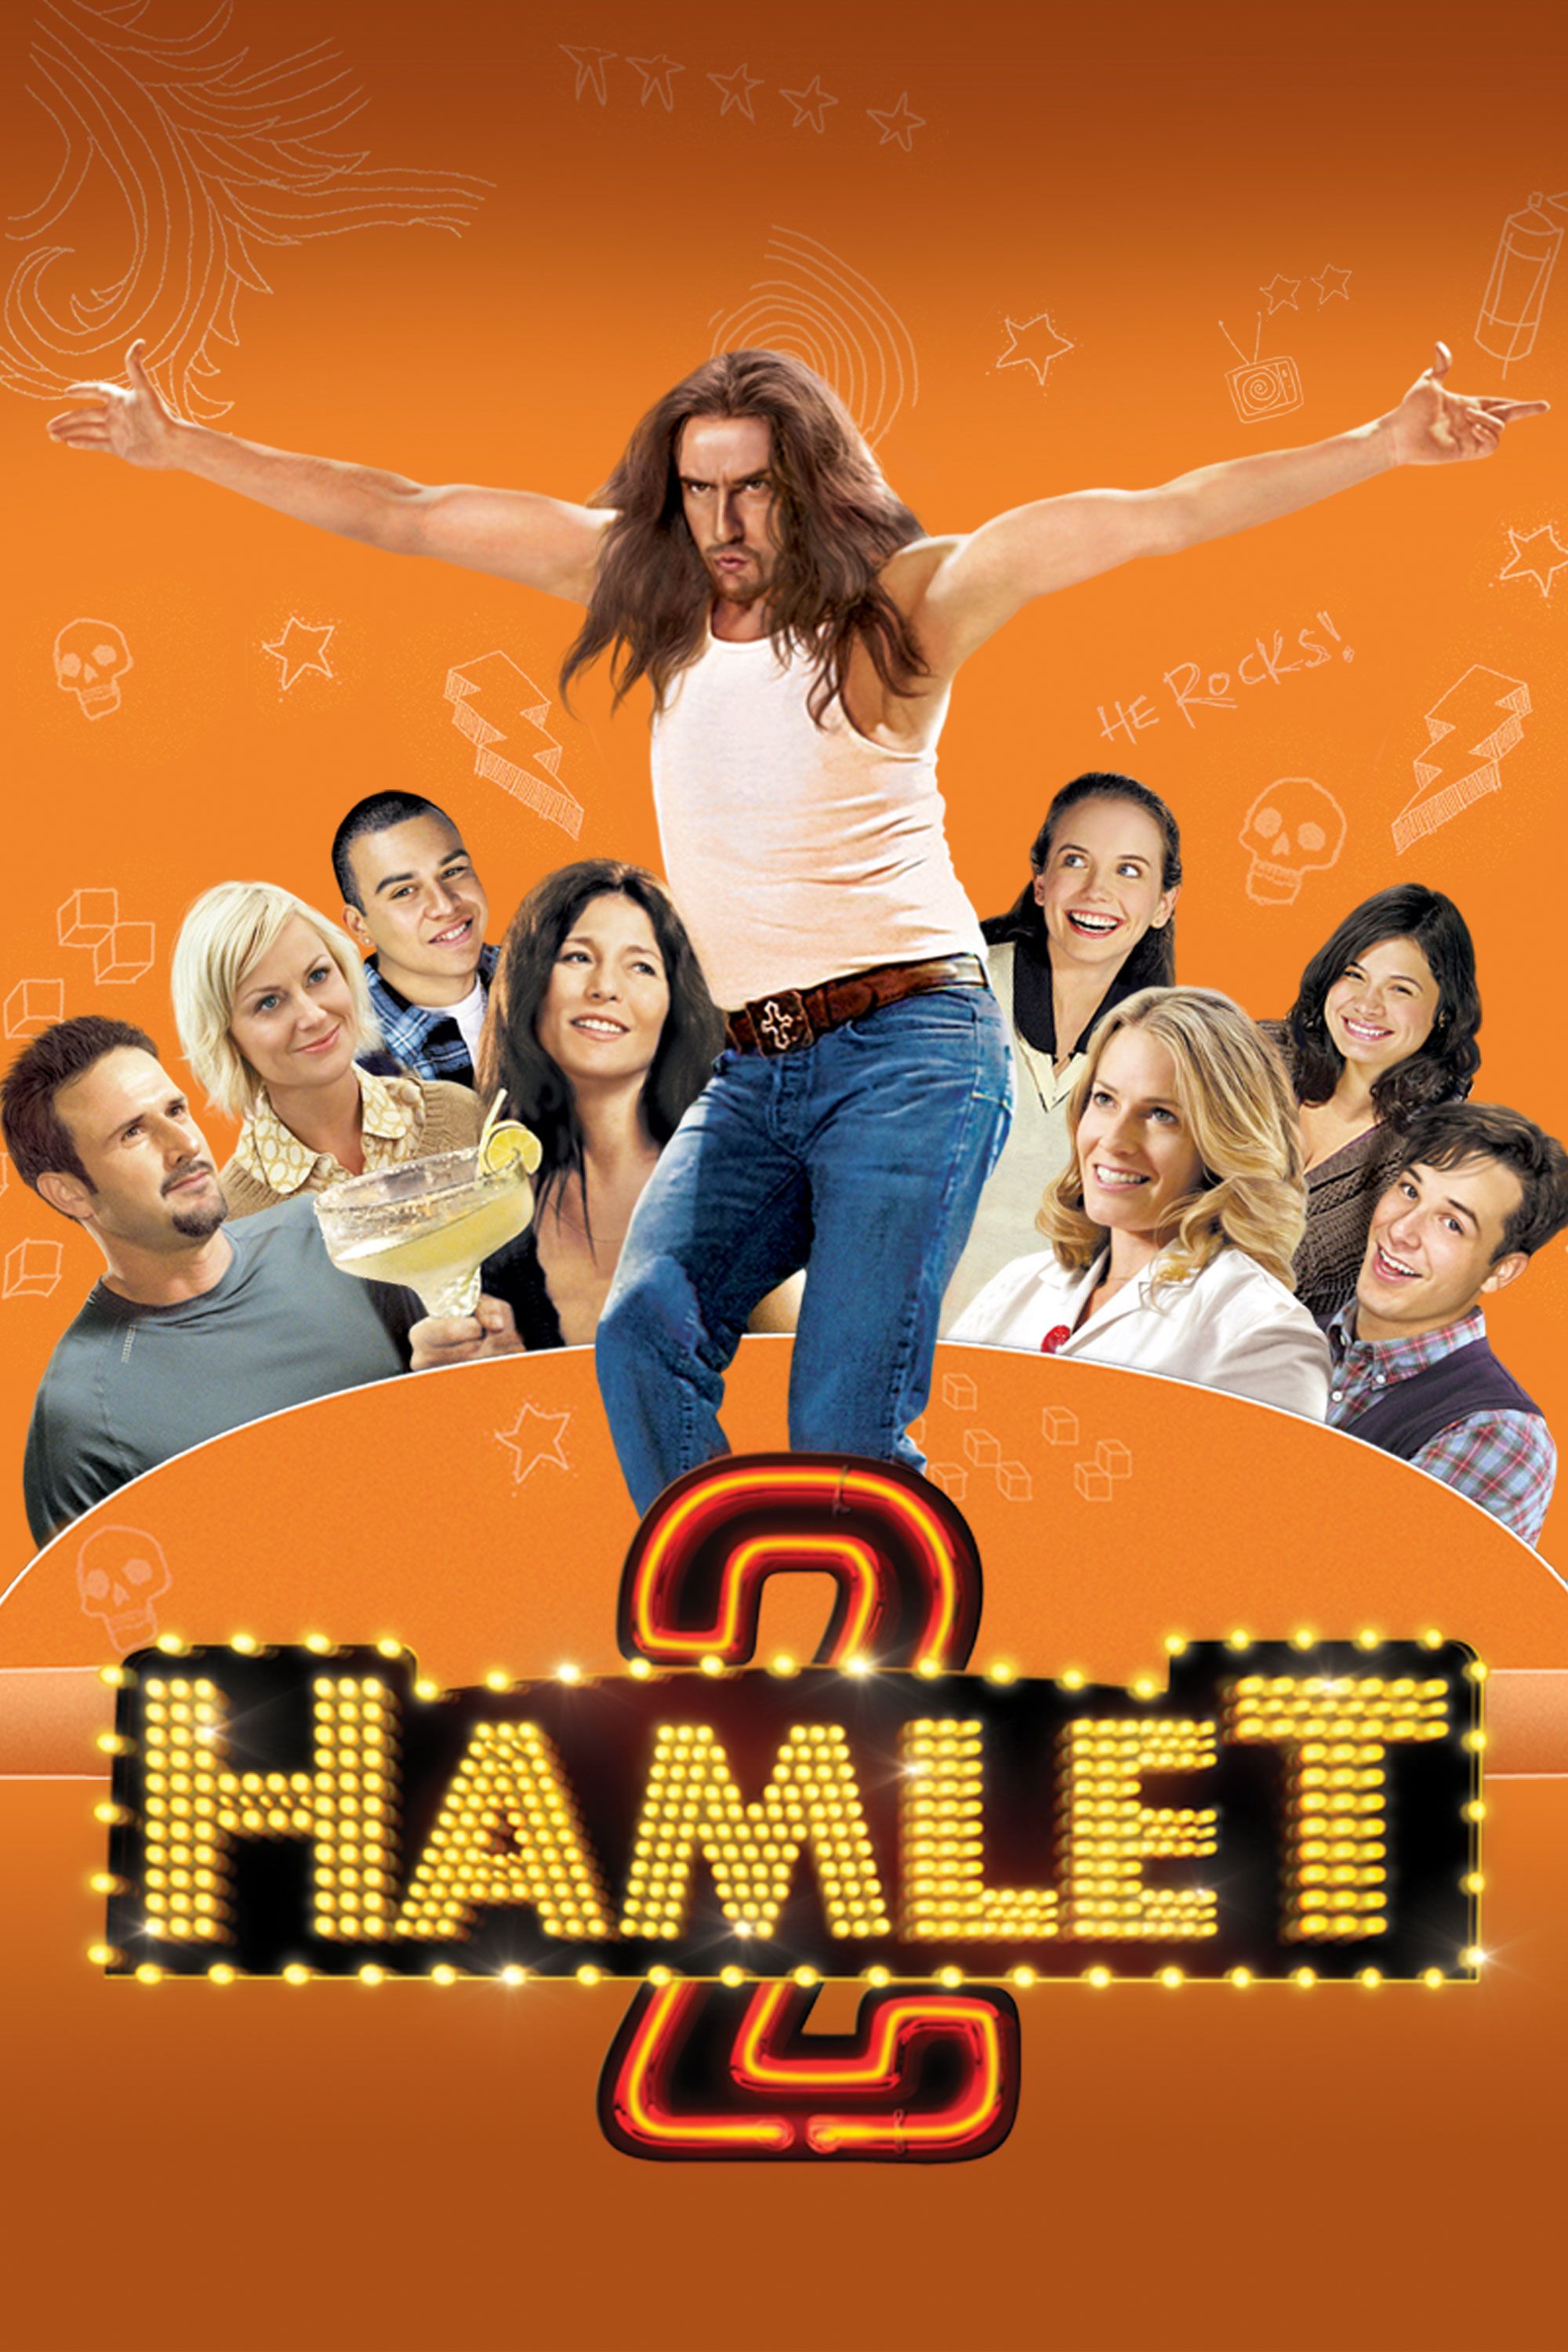 hamlet films